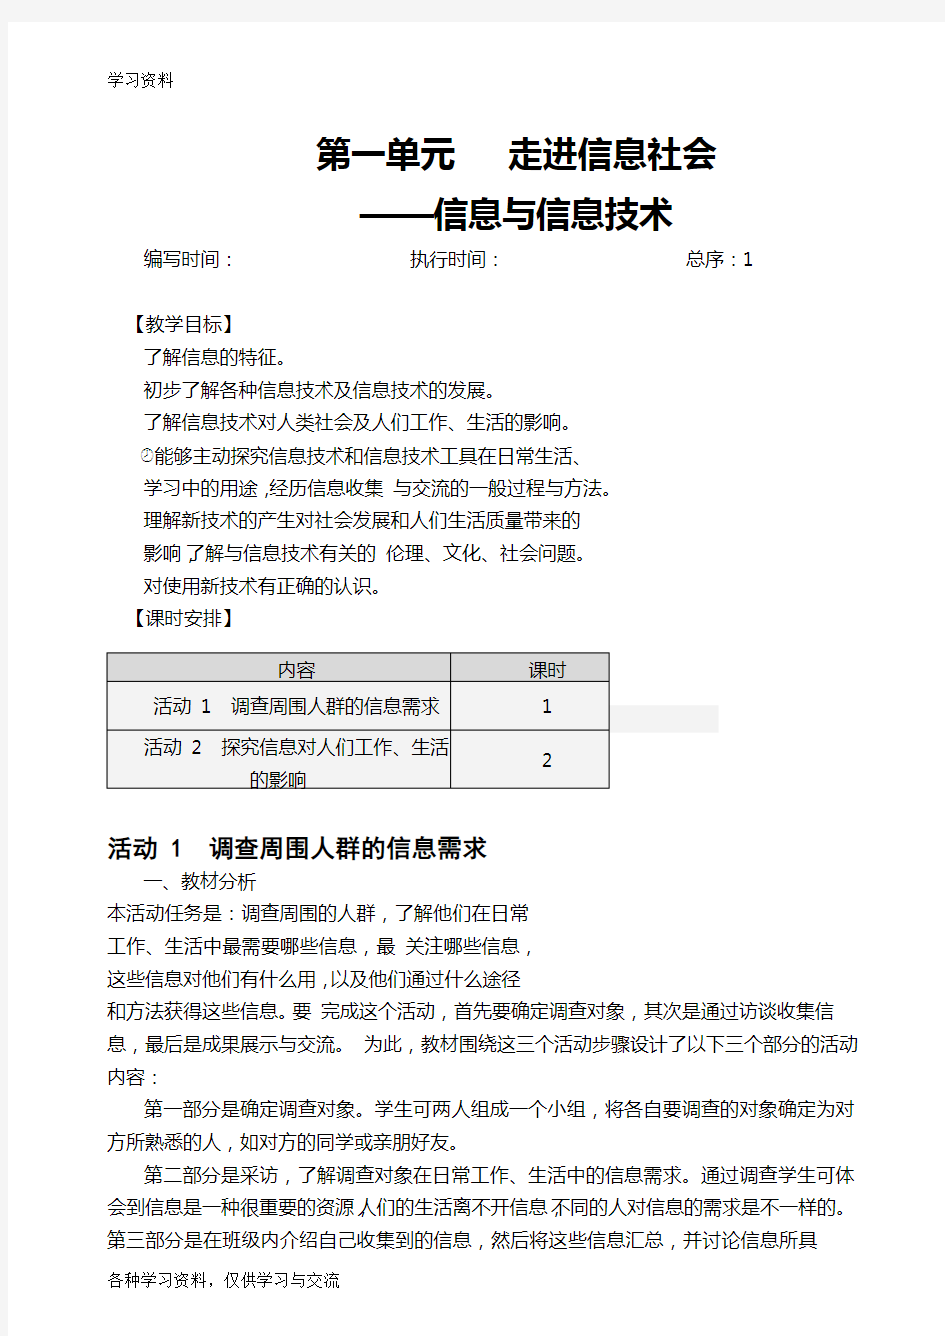 初中七年级上册信息技术教案-(上海科教版)教学教材